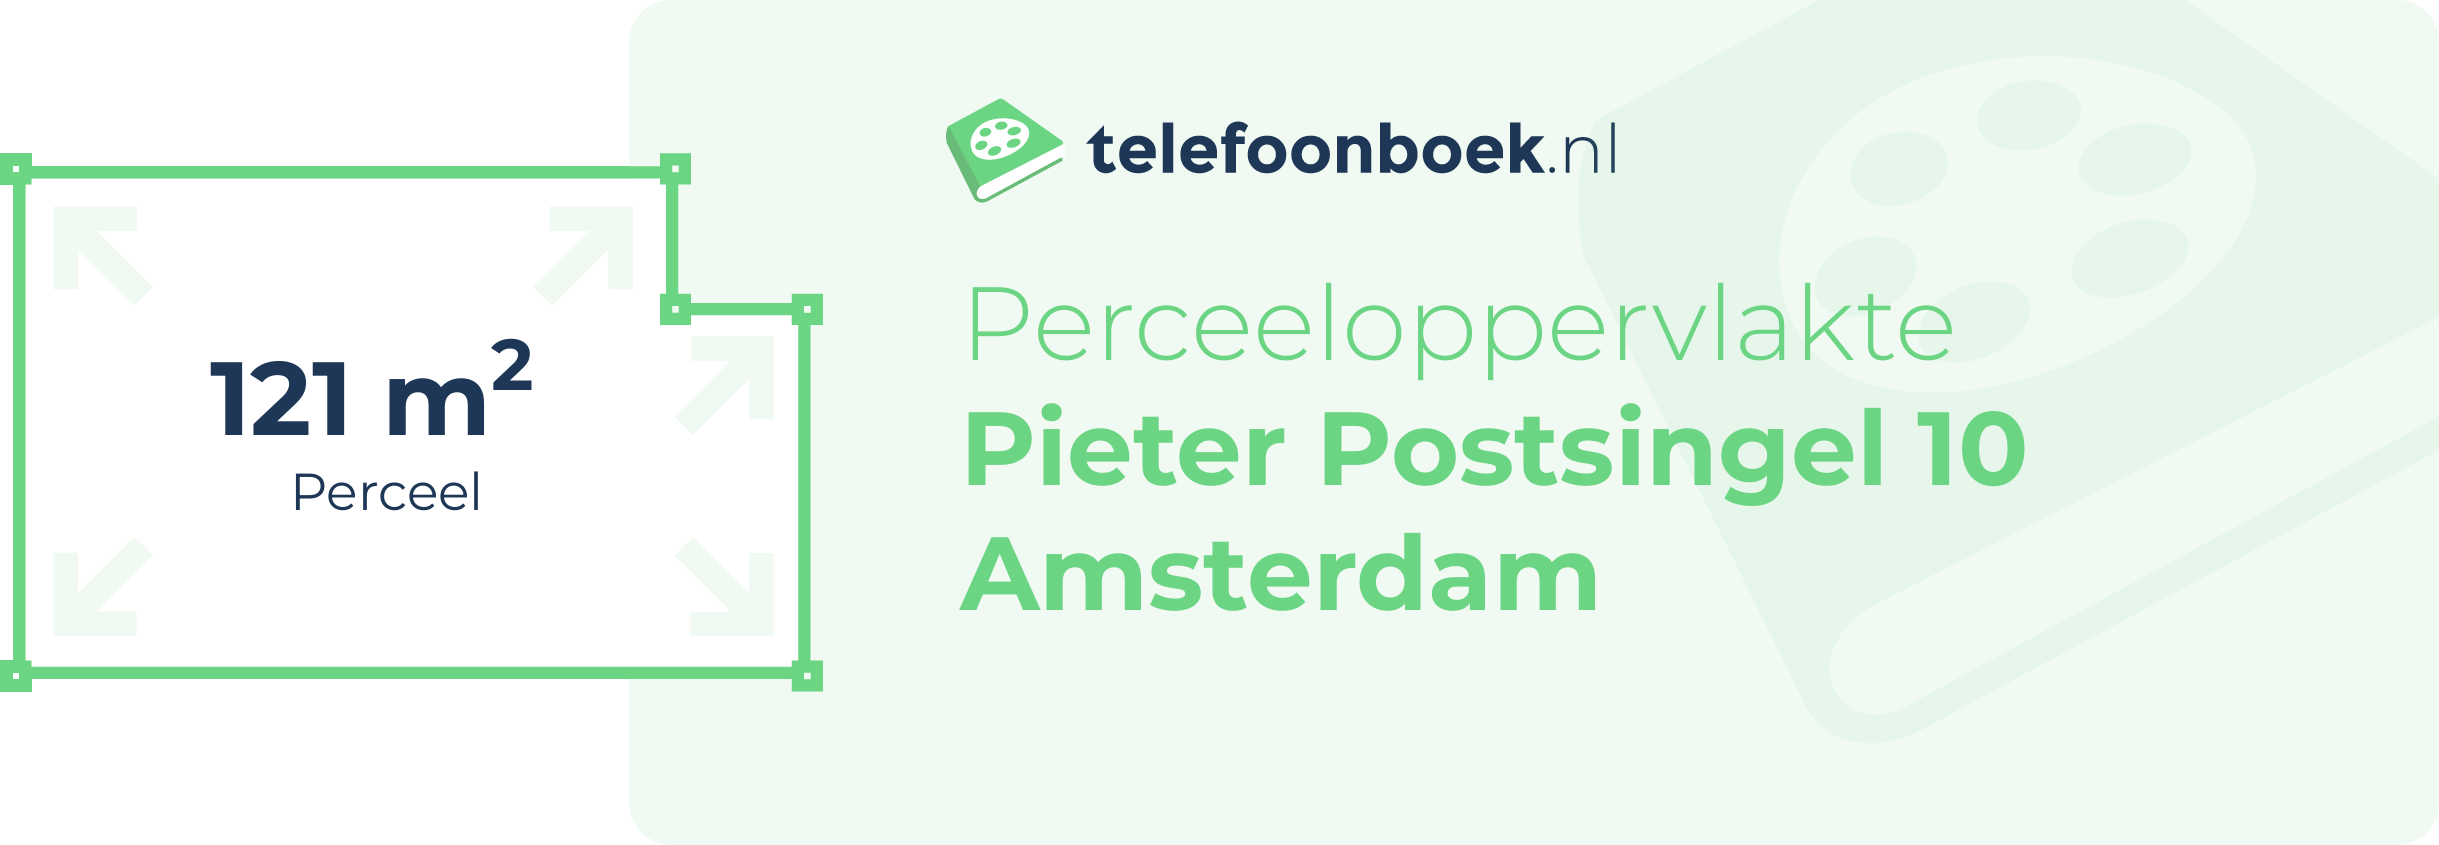 Perceeloppervlakte Pieter Postsingel 10 Amsterdam